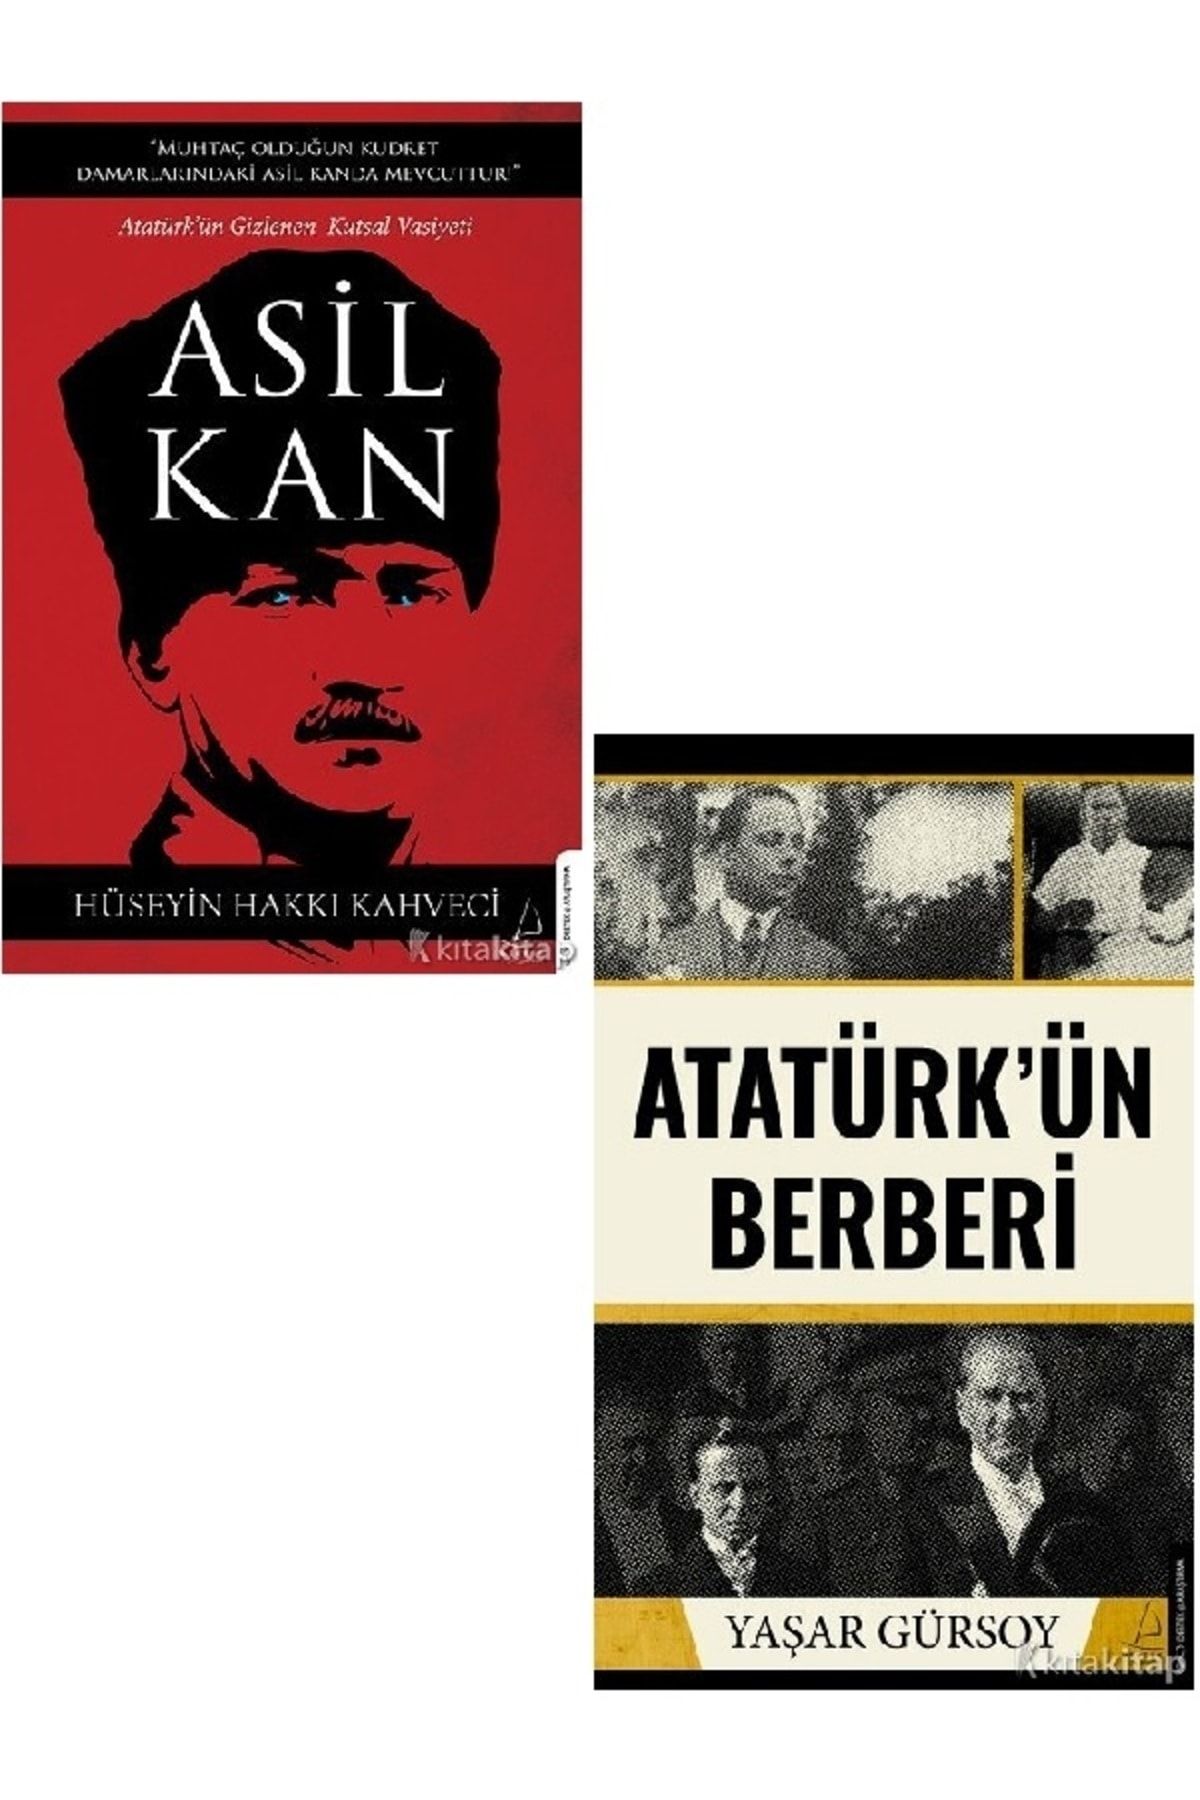 Kronik Kitap Asil Kan - Atatürk’ün Berberi - Yaşar Gürsoy - Hüseyin Hakkı Kahveci 2 KİTAP SET